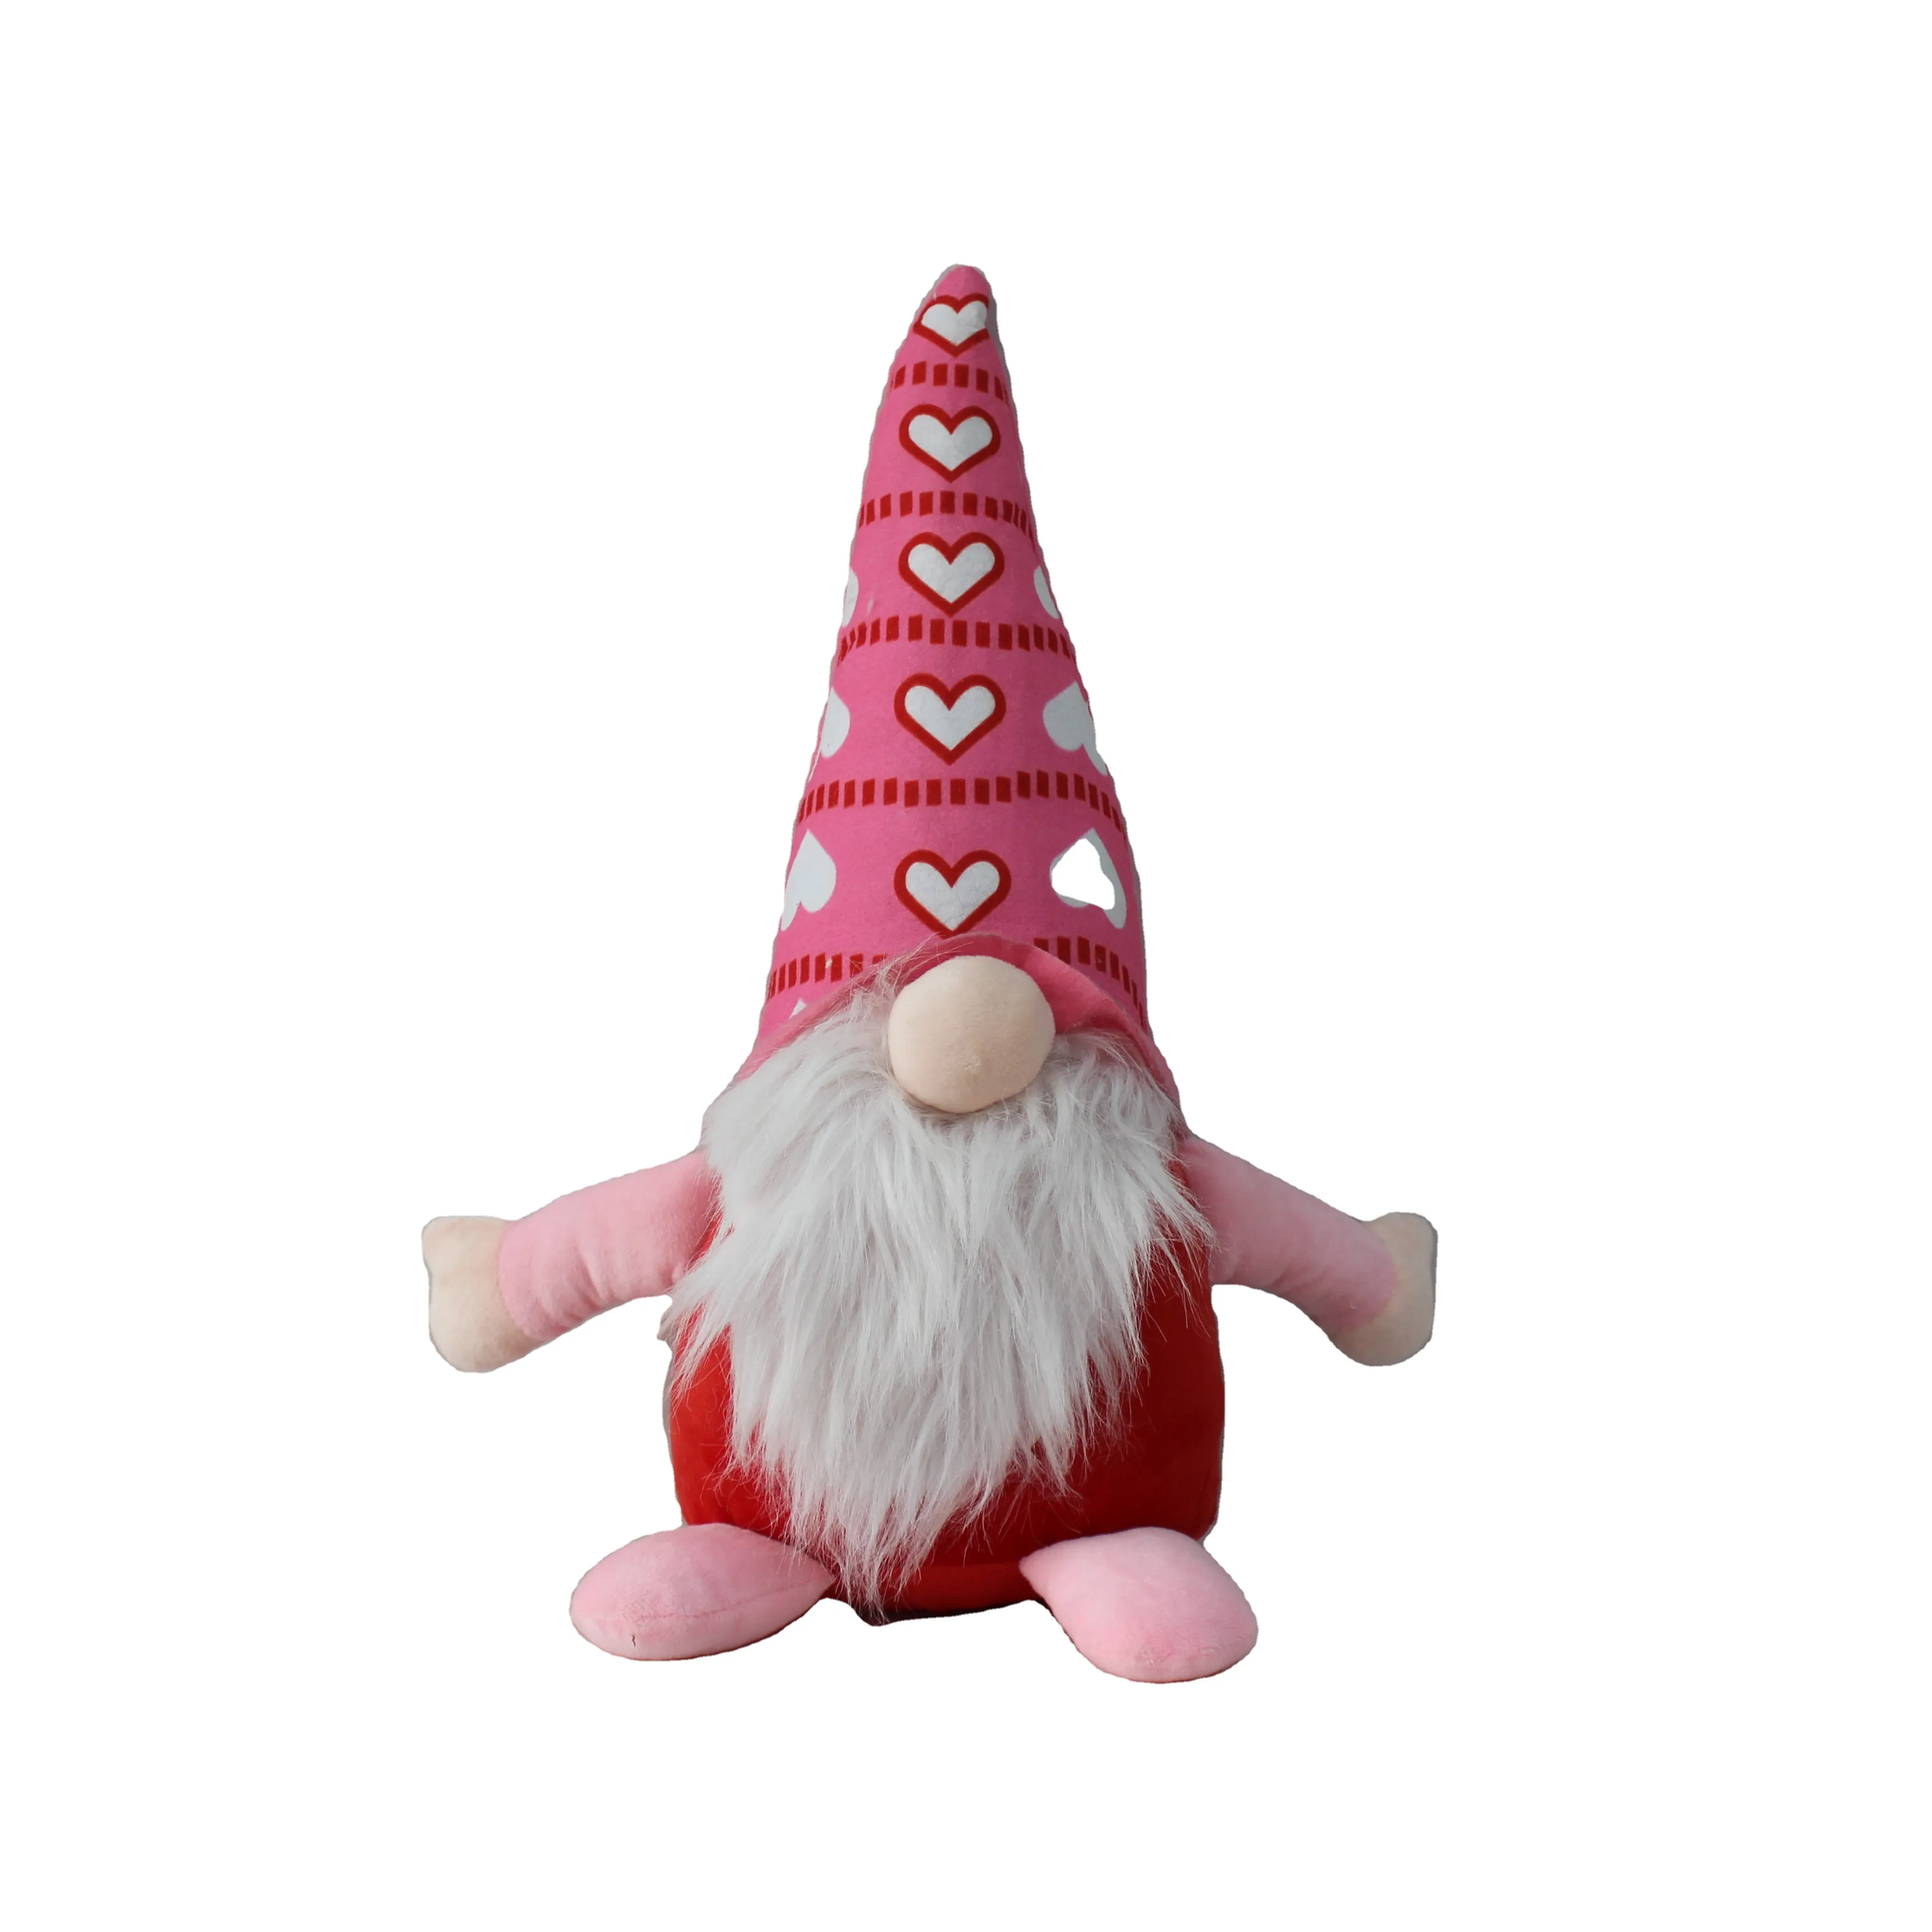 Topi tajam Santa Claus mainan anak-anak dekorasi pohon Natal bahan alami boneka mewah untuk hadiah Natal